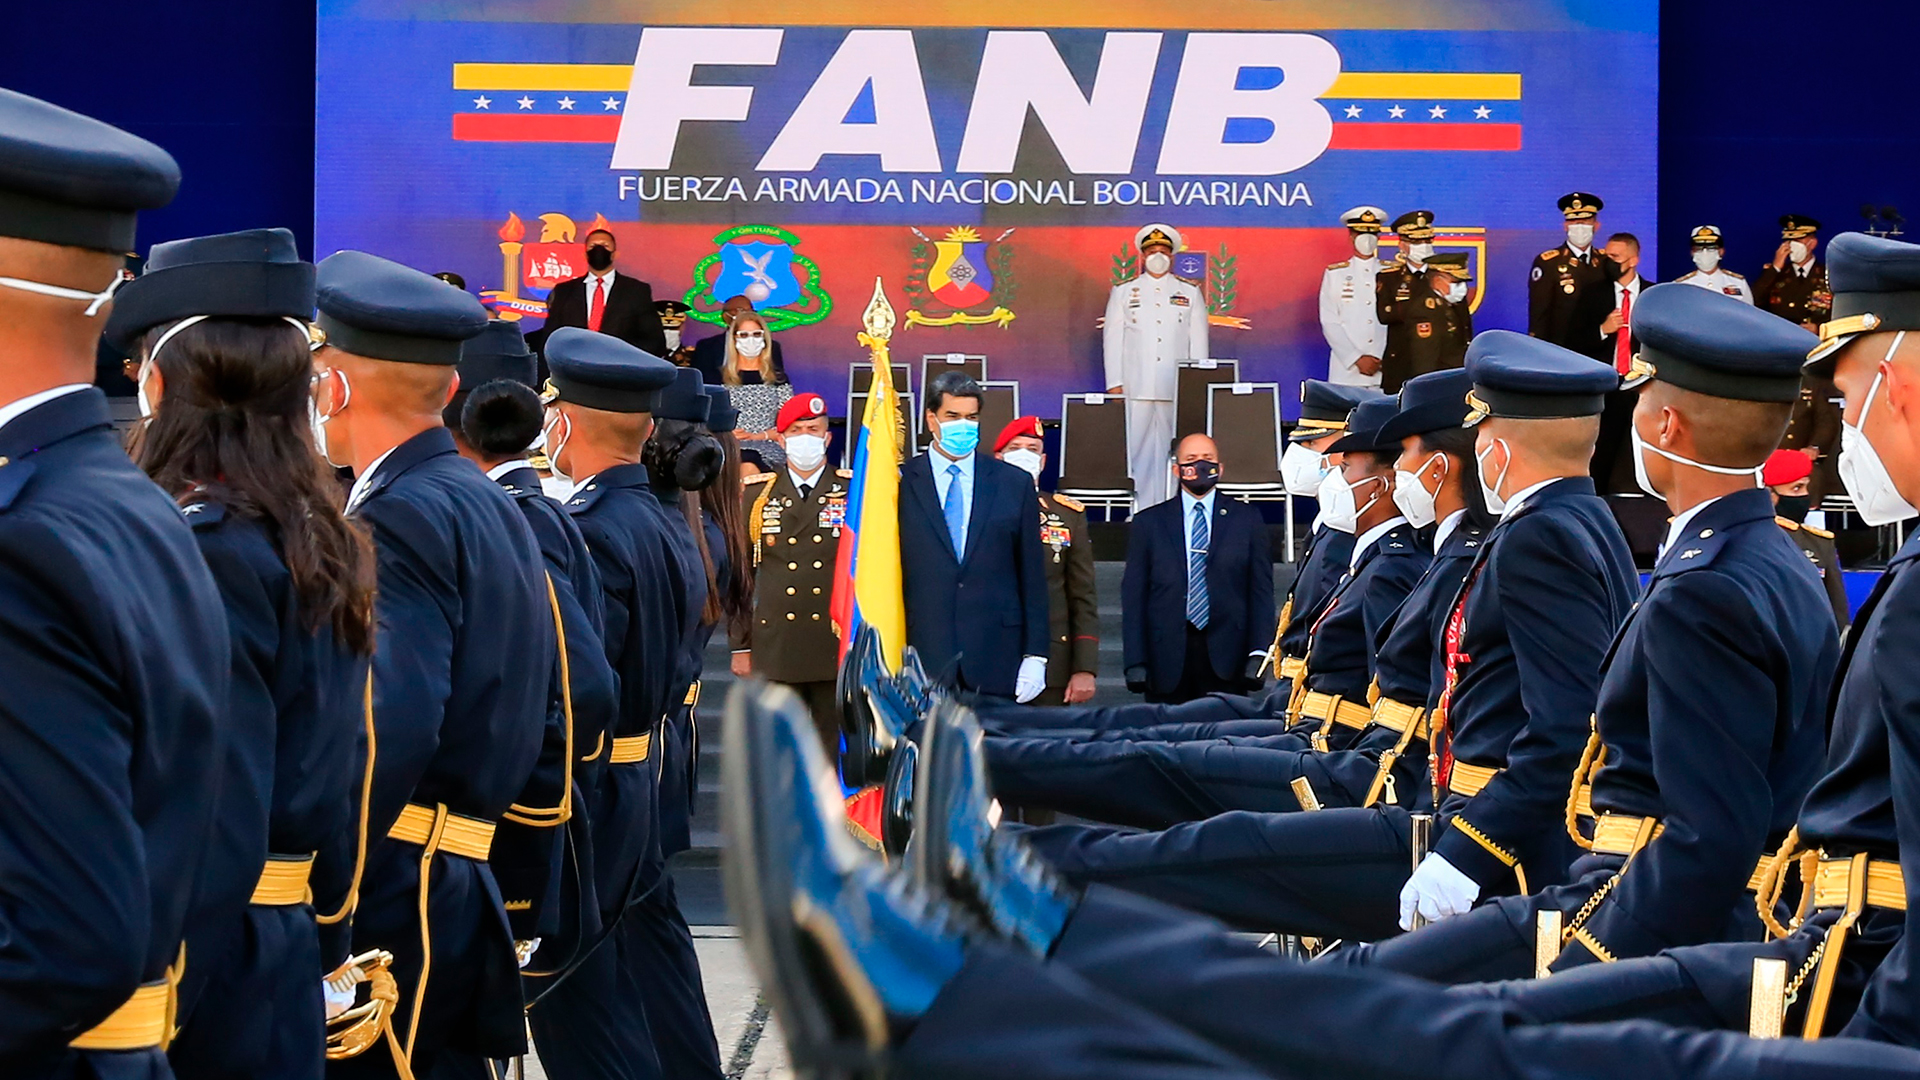 El presidente venezolano Nicolas Maduro durante la graduación de cadetes del Ejército venezolano en julio de este año. (EFE/EPA/Palacio de Miraflores)